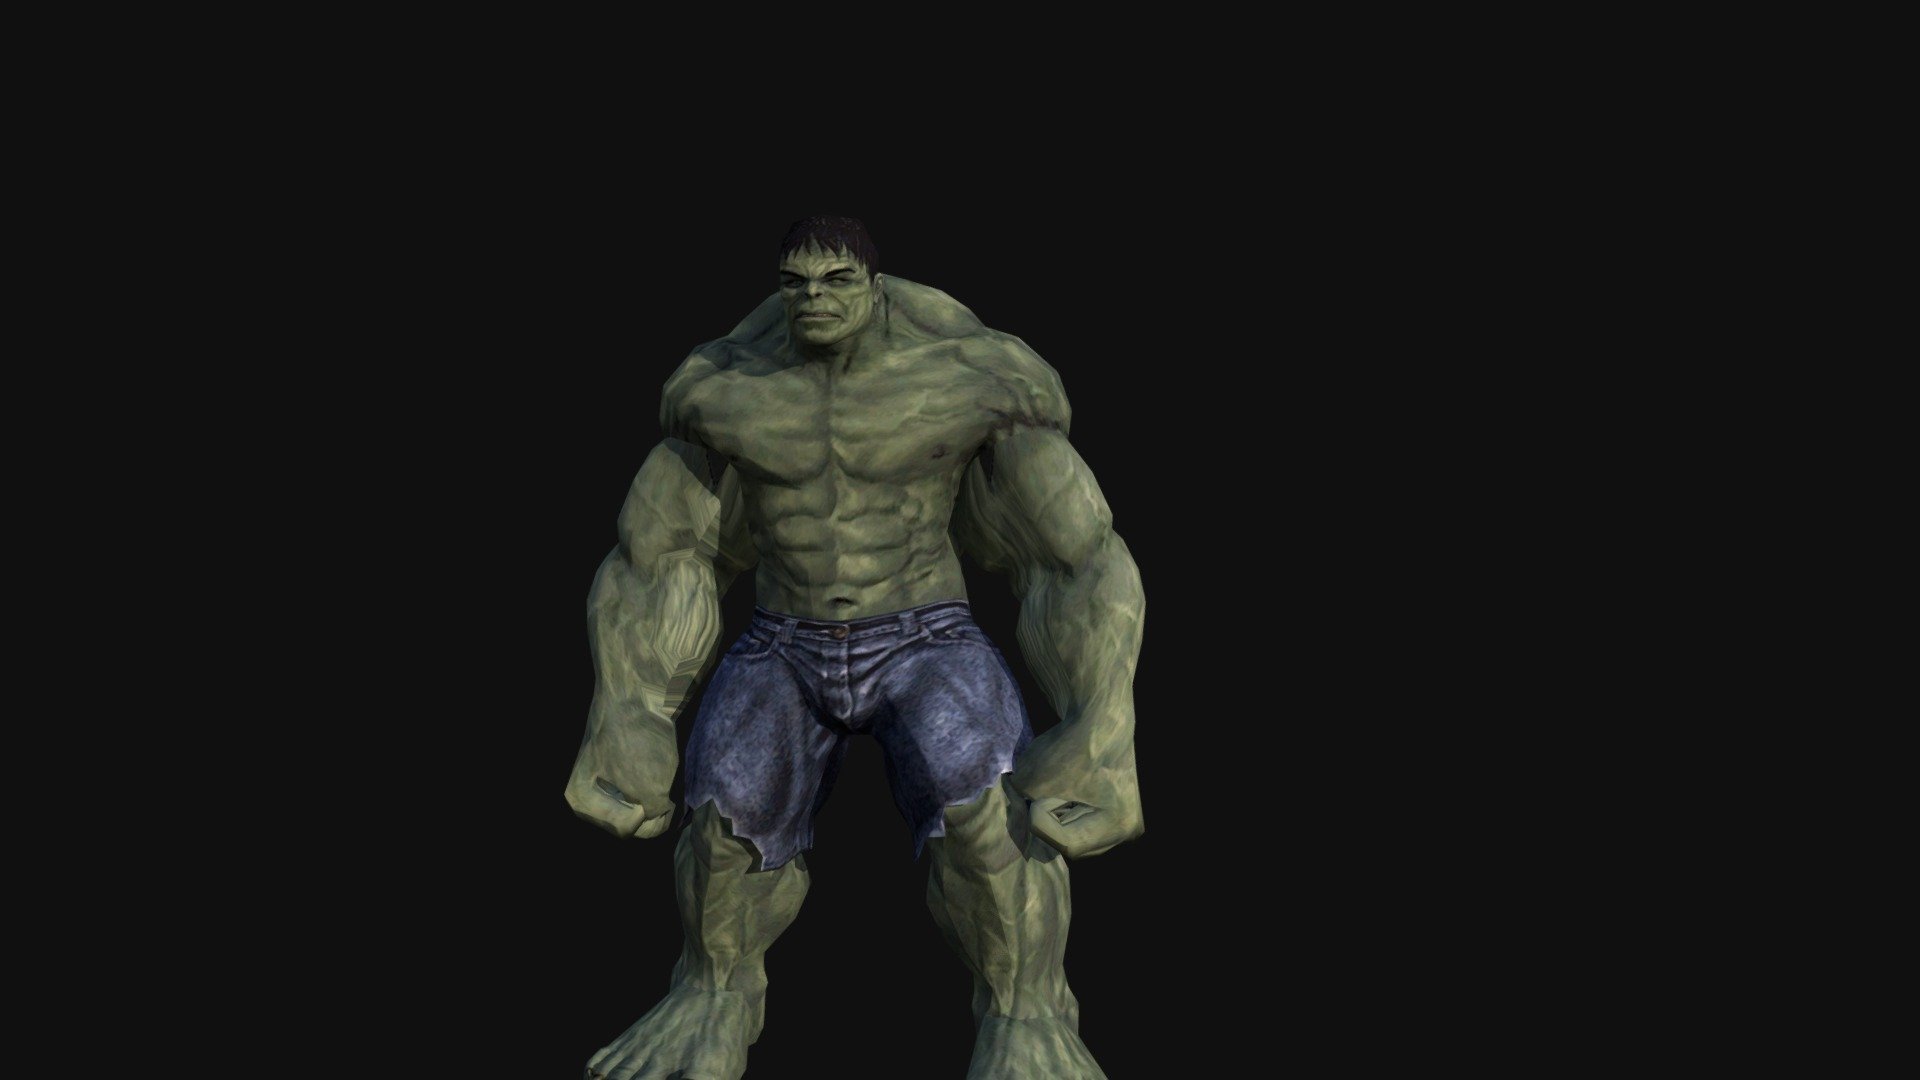 Jumping animation for Hulk rig - Hulk Jump - 3D model by Toby Dart (@tobydart) 3d model